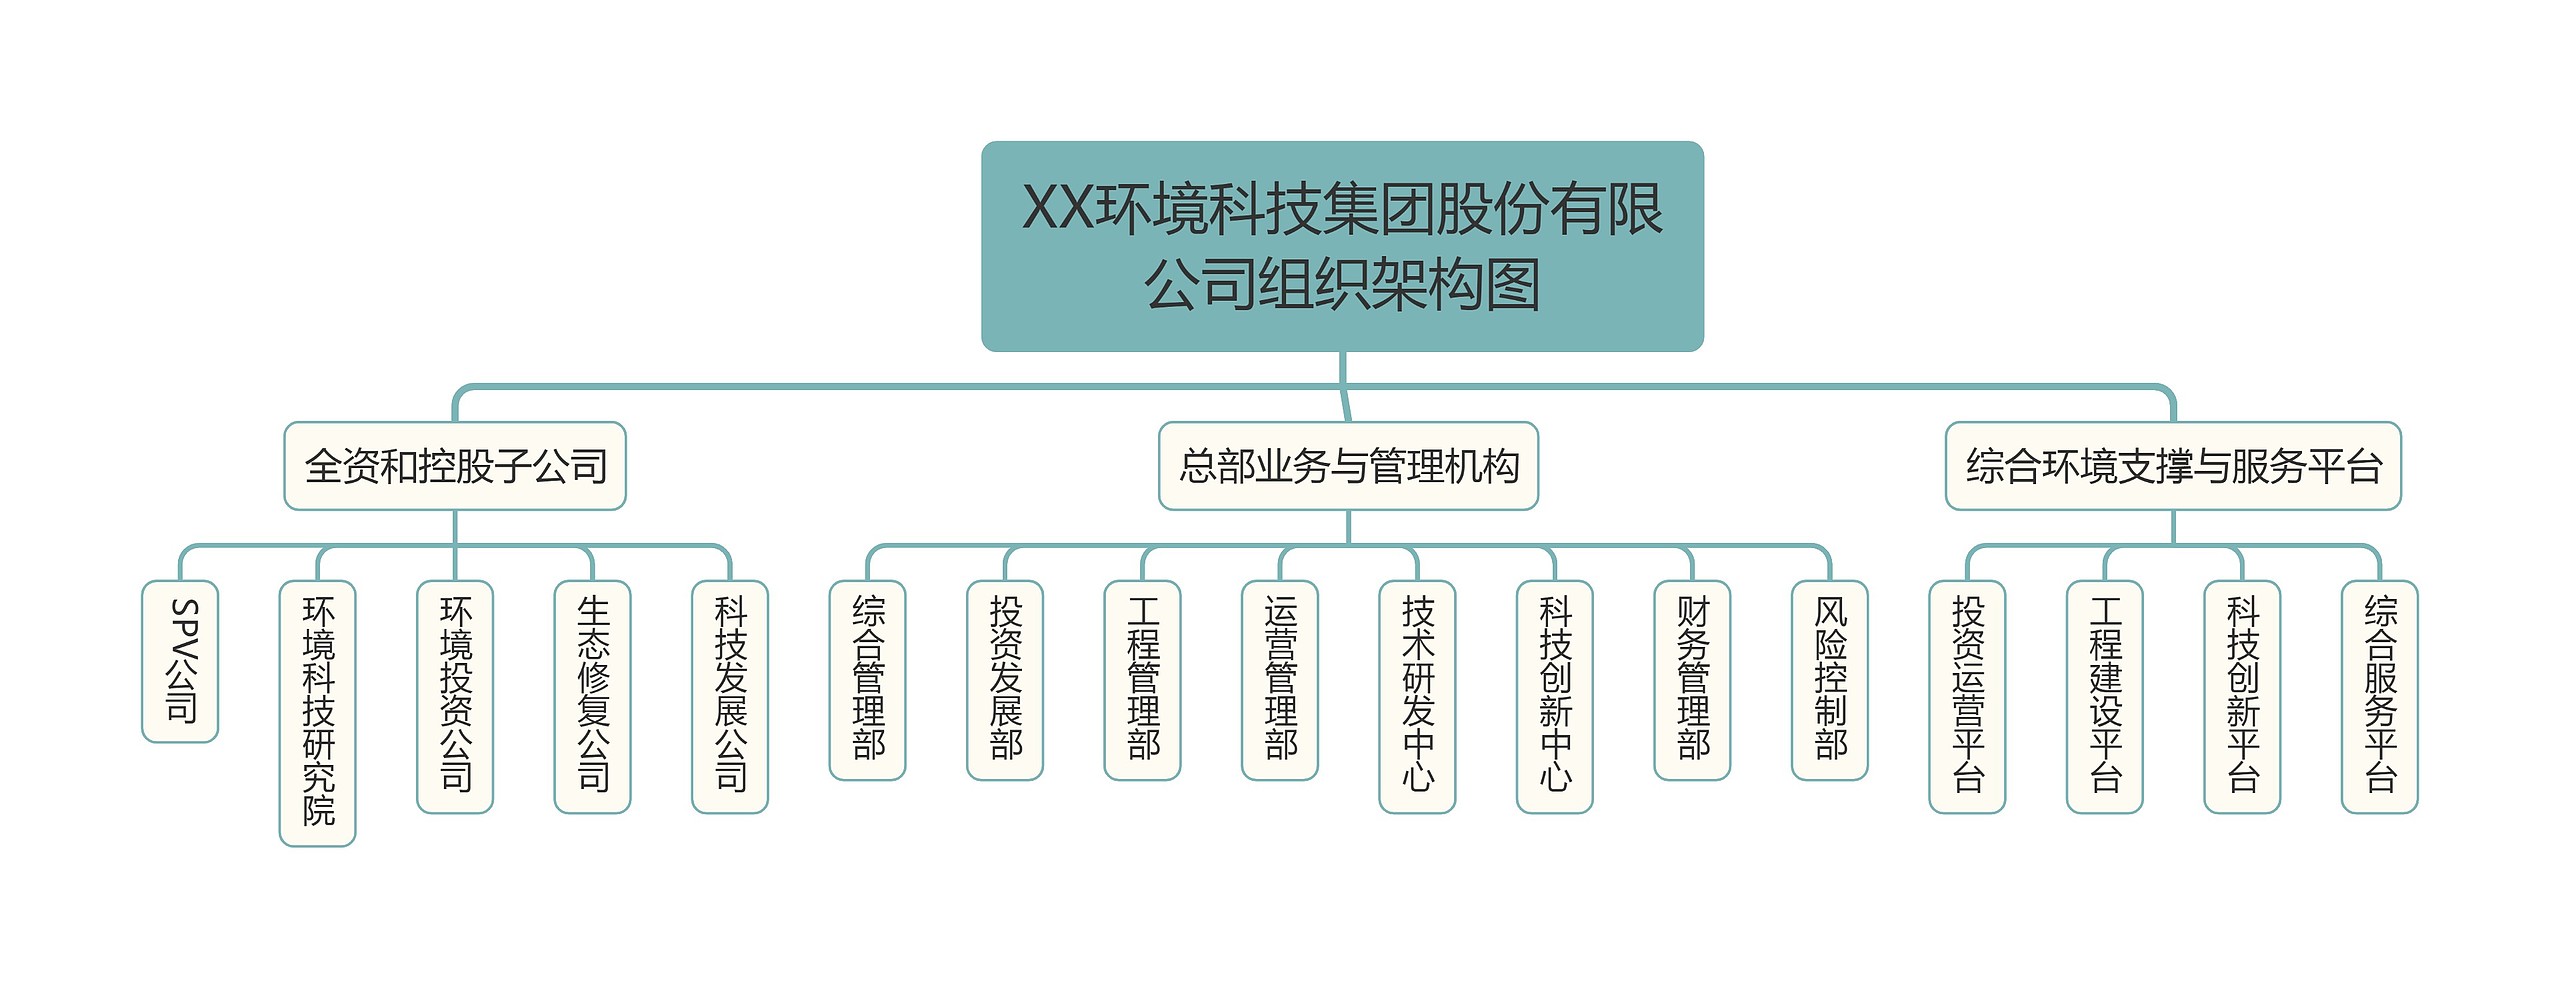 XX环境科技集团股份有限公司组织架构图